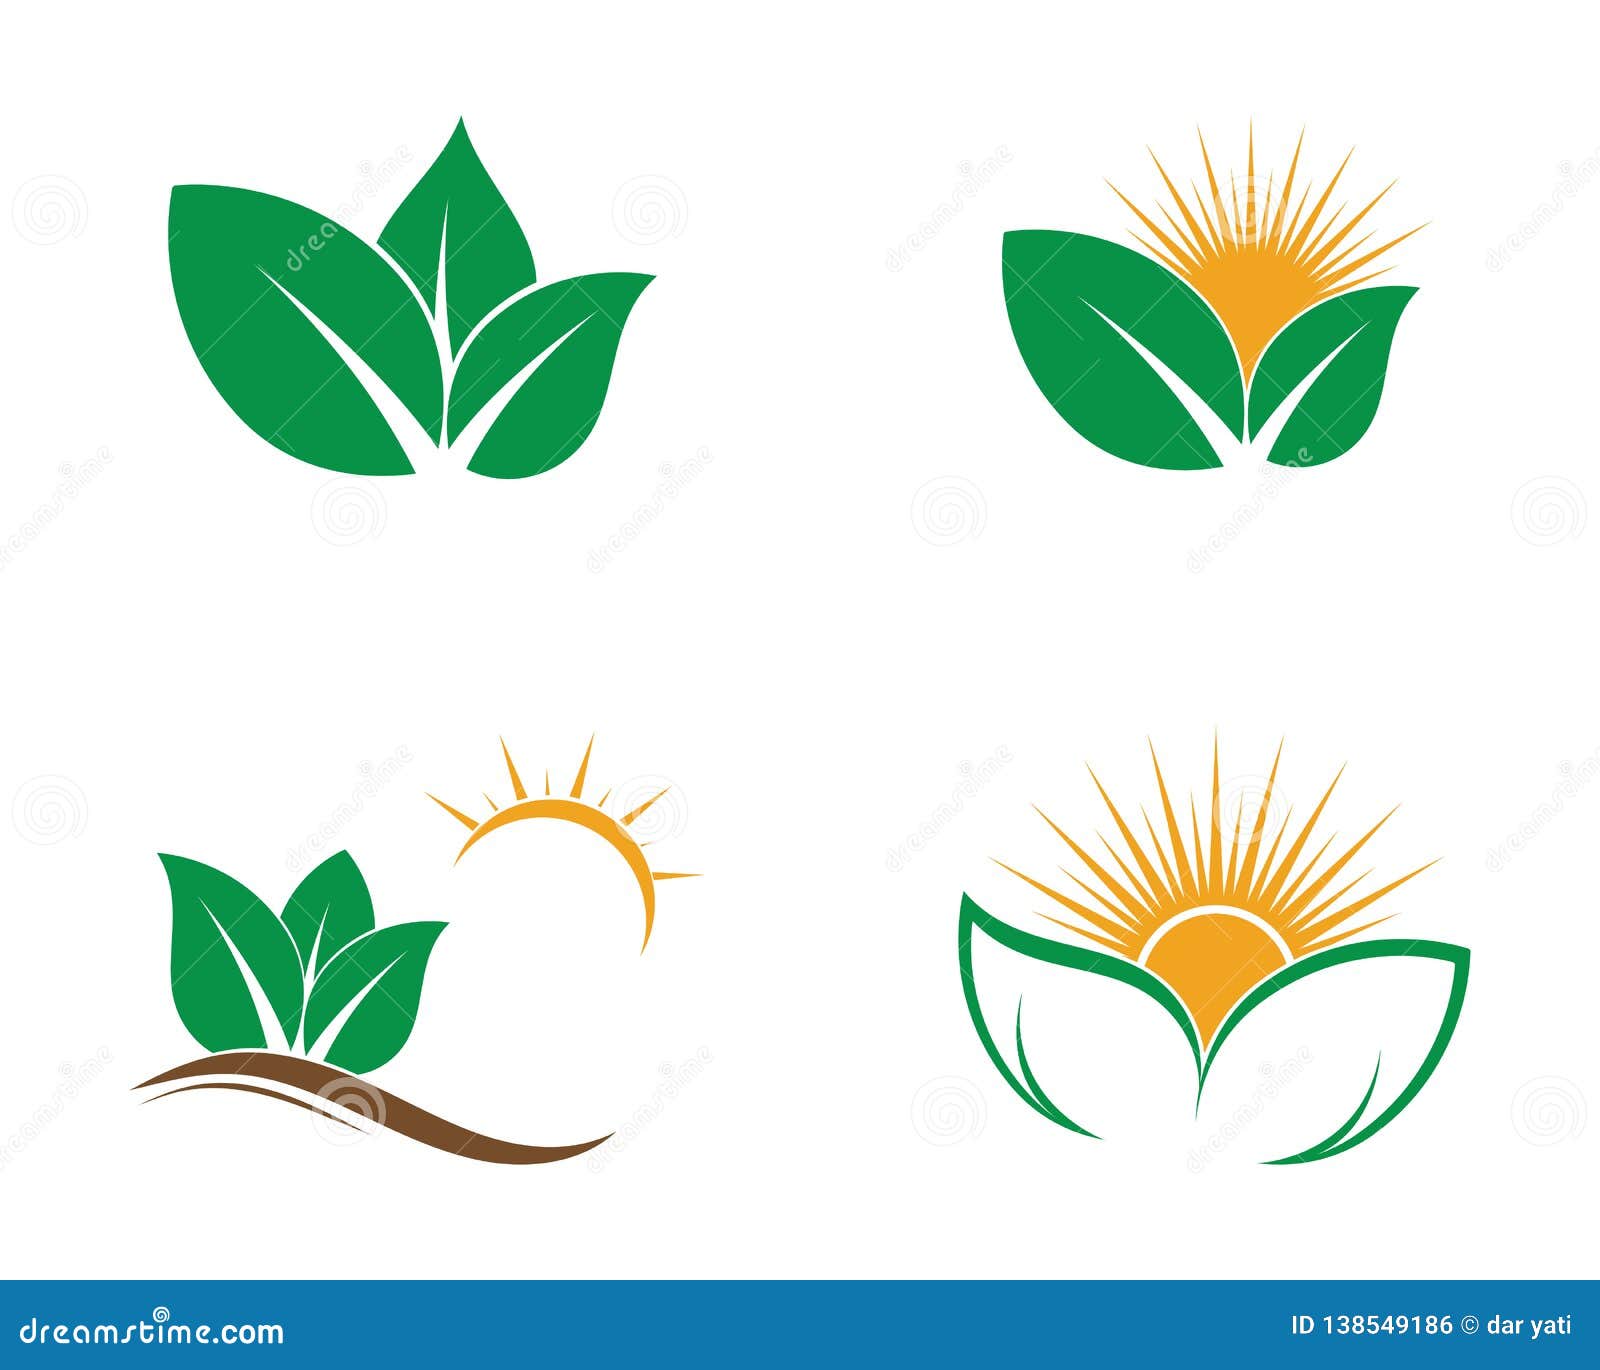 eco tree leaf logo shutterstock